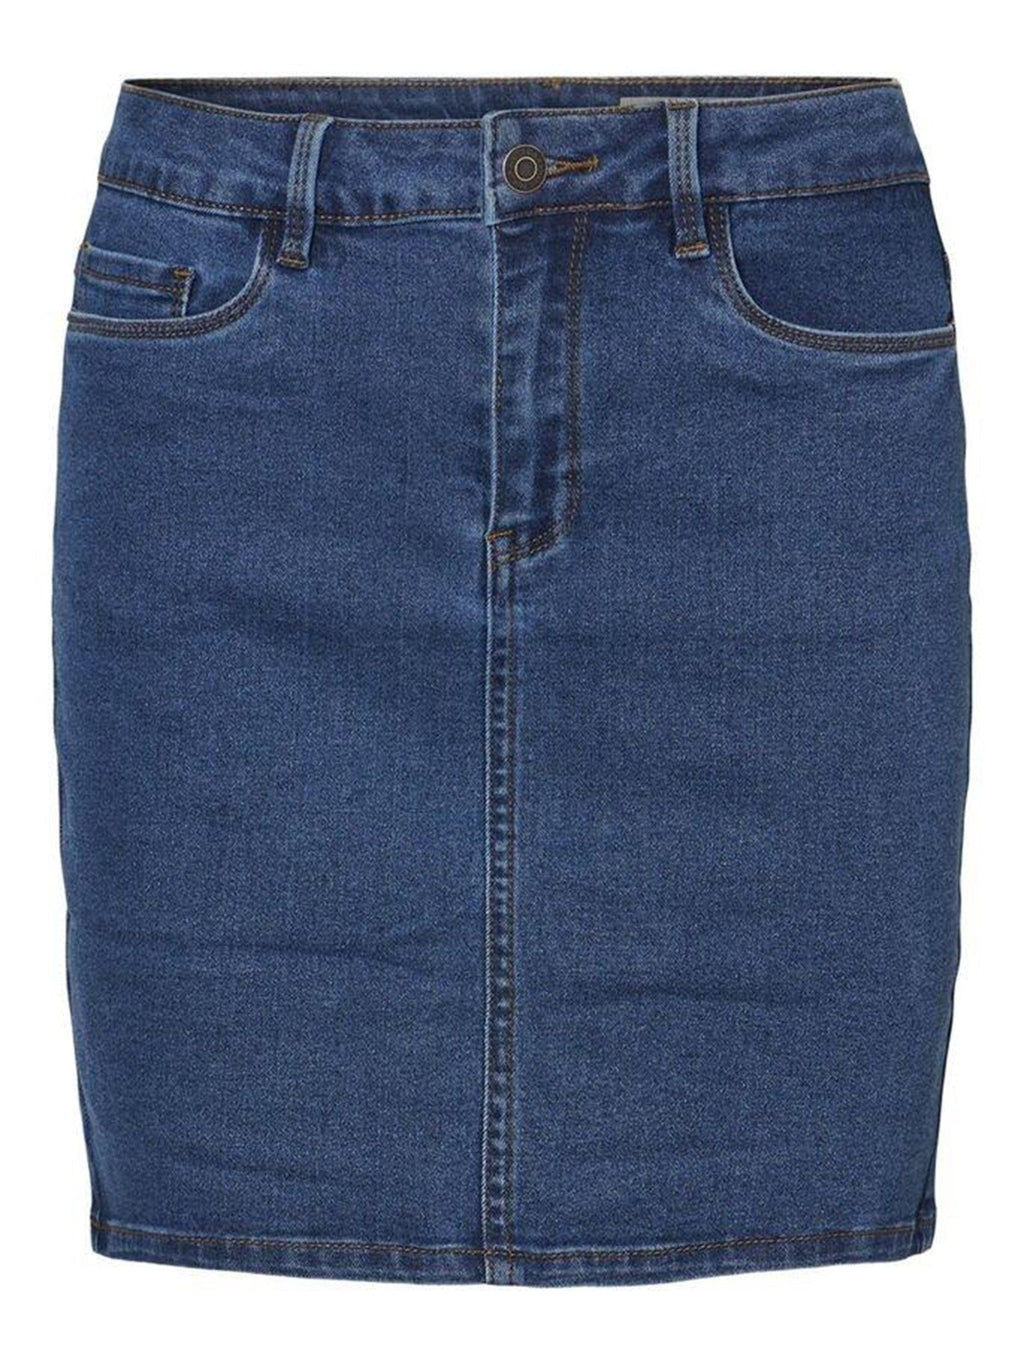 Karštas septynis sijonas - mėlynas džinsinis audinys